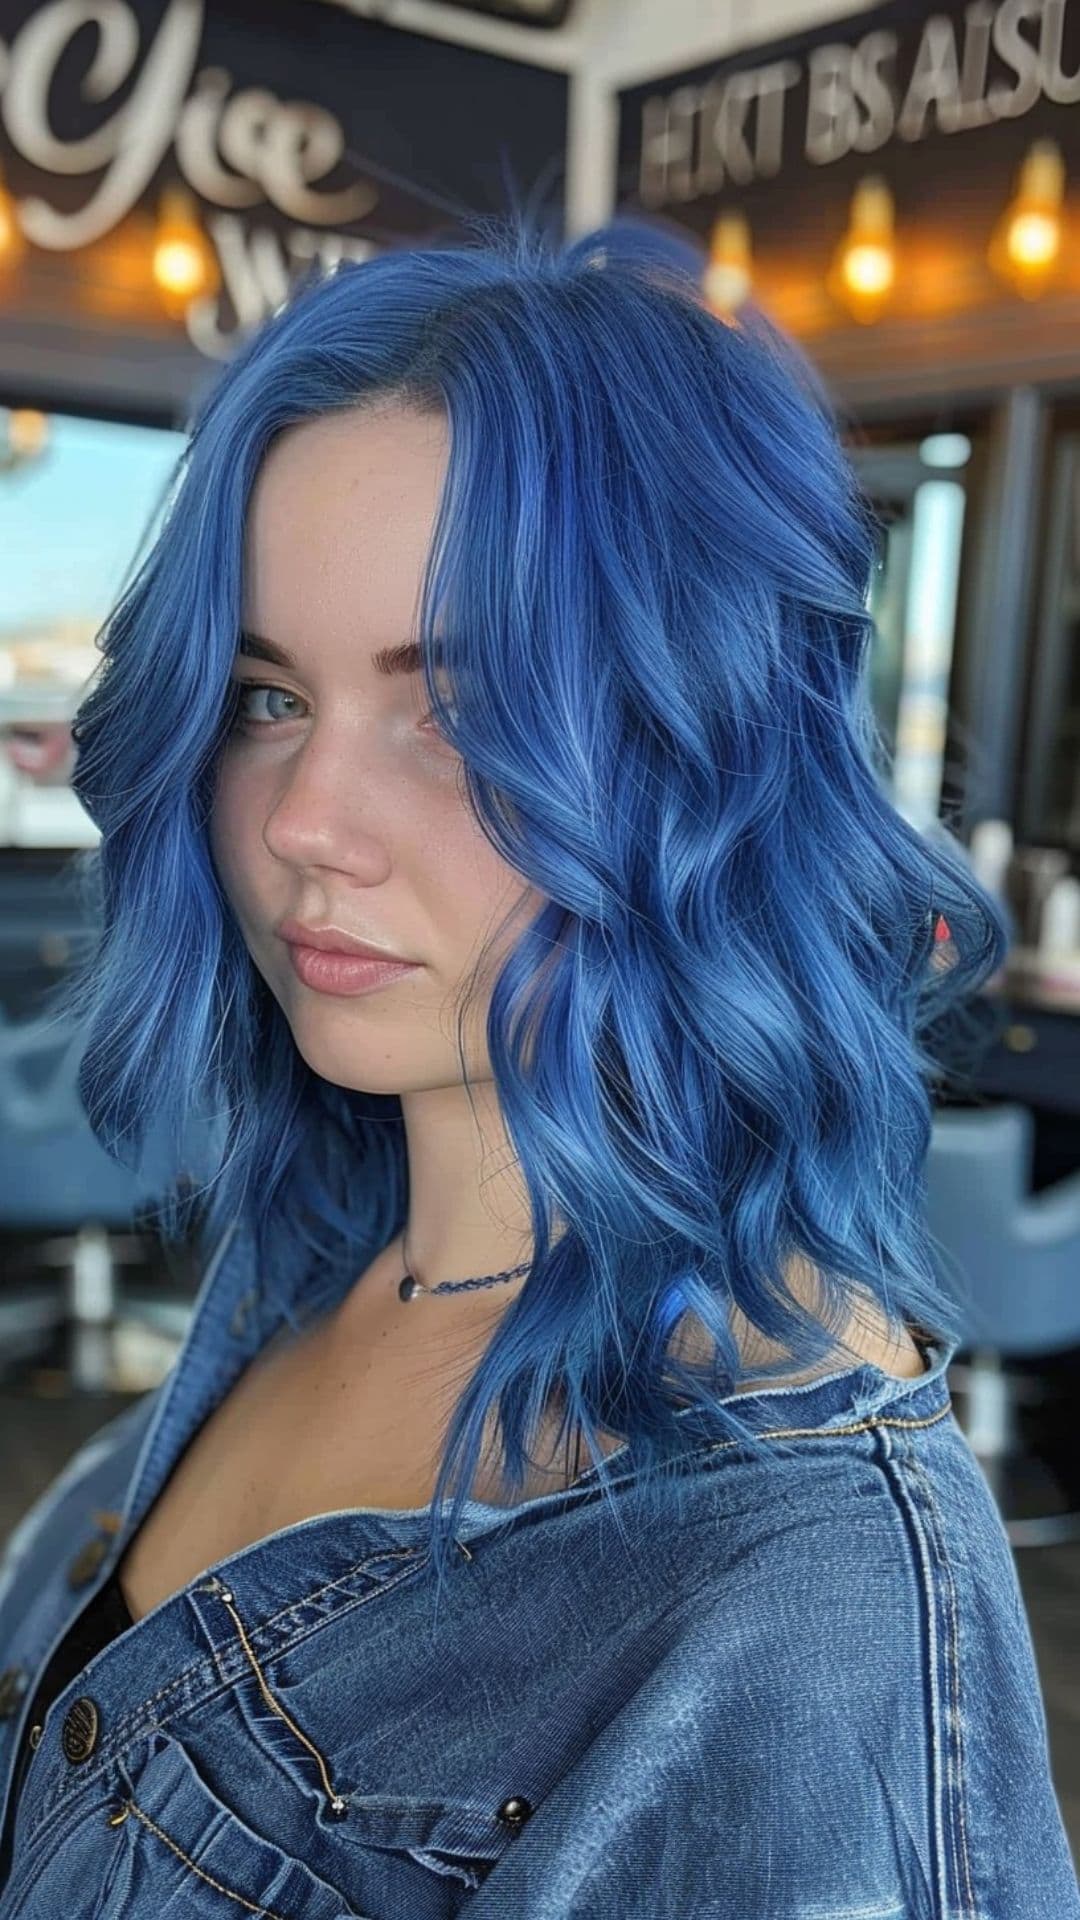 A woman modelling a deep, ocean blue hair.